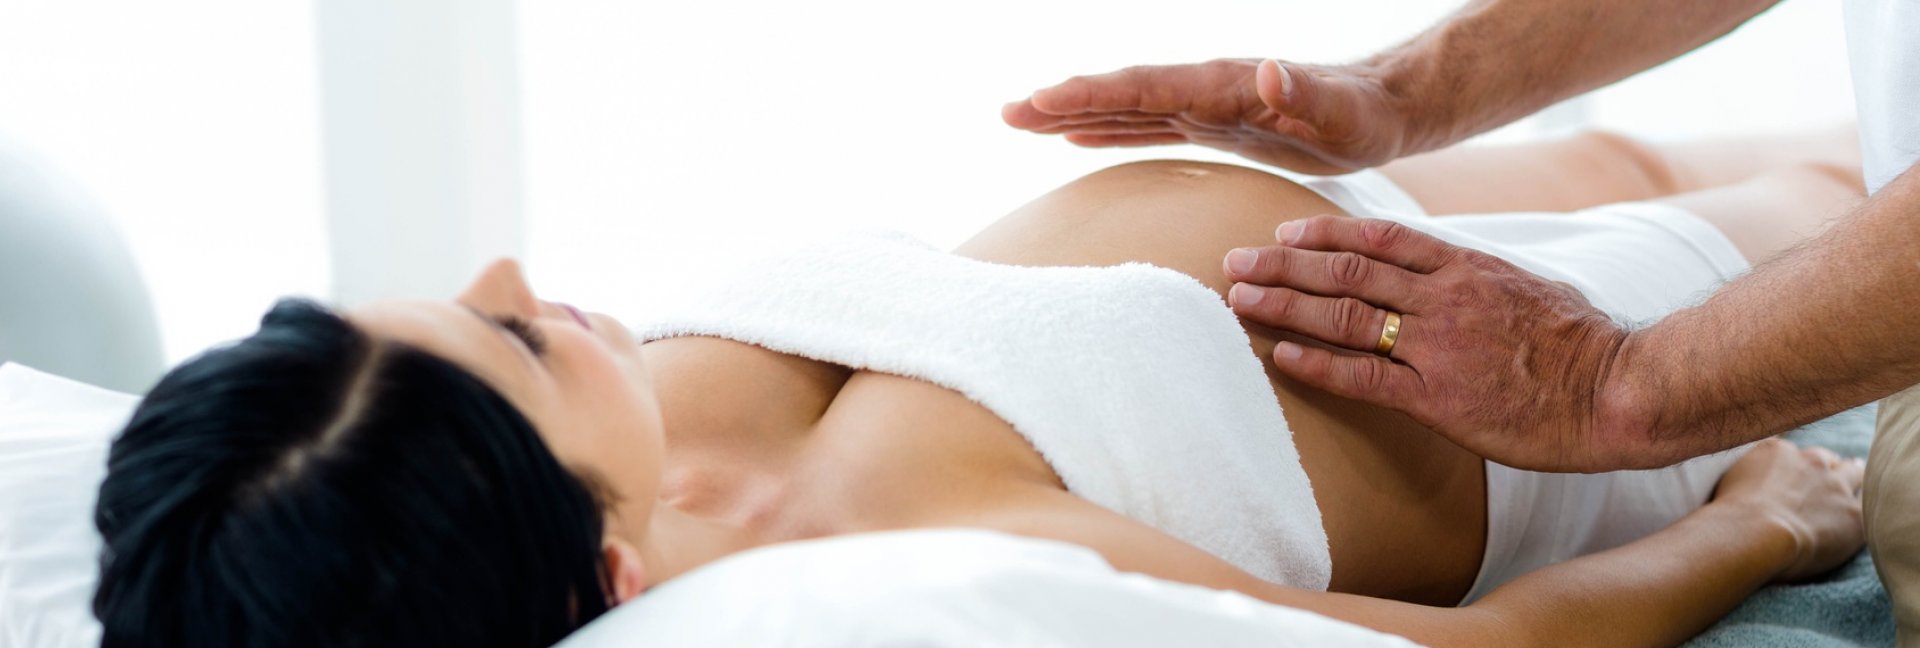 Jak pozbyć się bólu mięśni w ciąży? Masaż prenatalny Warszawa